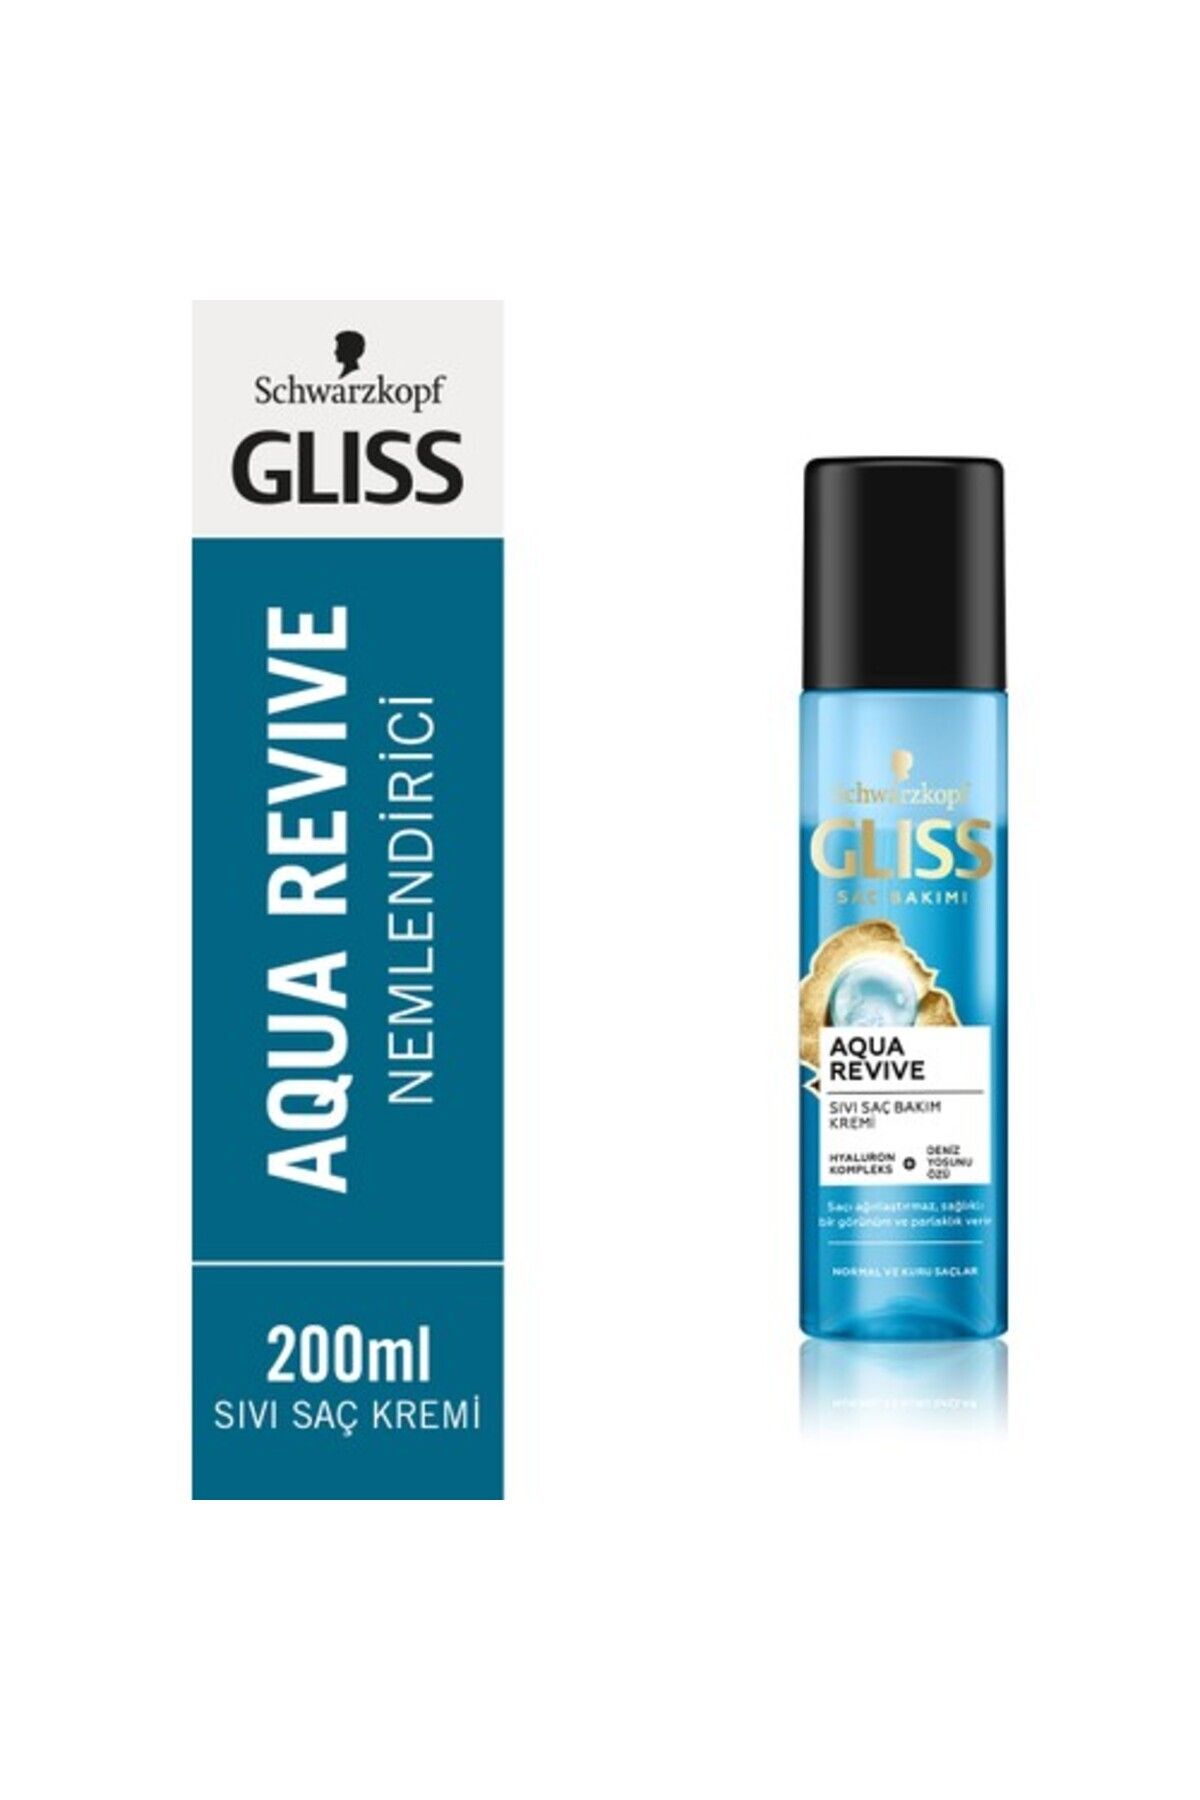 Gliss Sıvı Saç Kremi Aqua Revive 200 ml